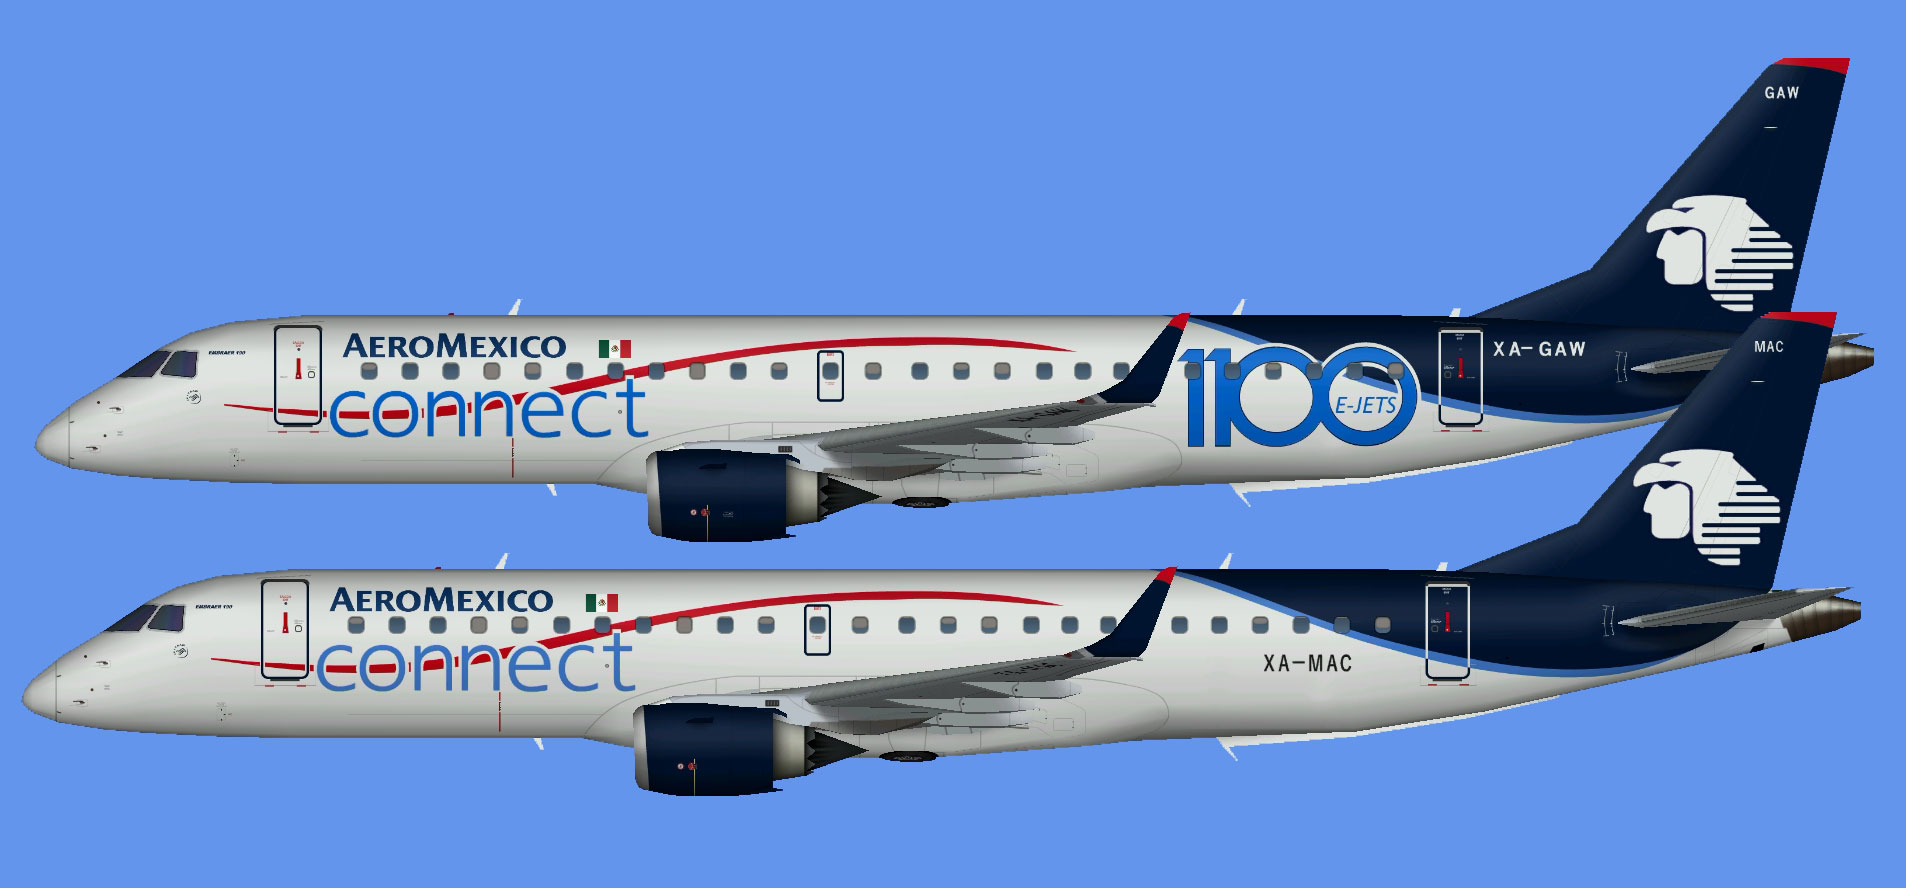 Aeromexico Connect Embraer E-190